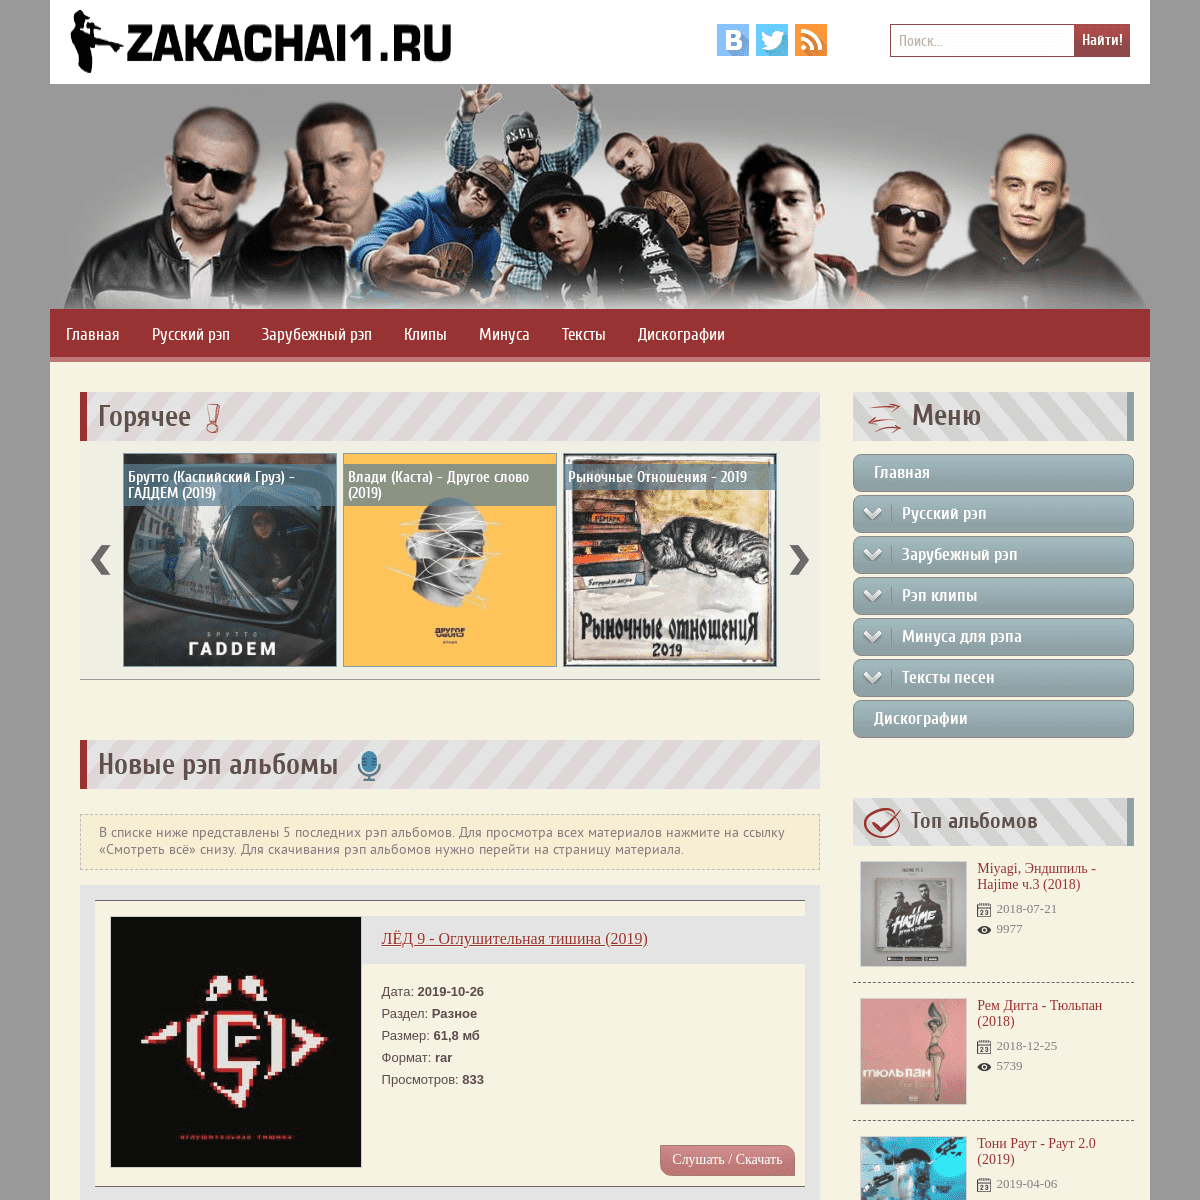 A complete backup of zakachai1.ru